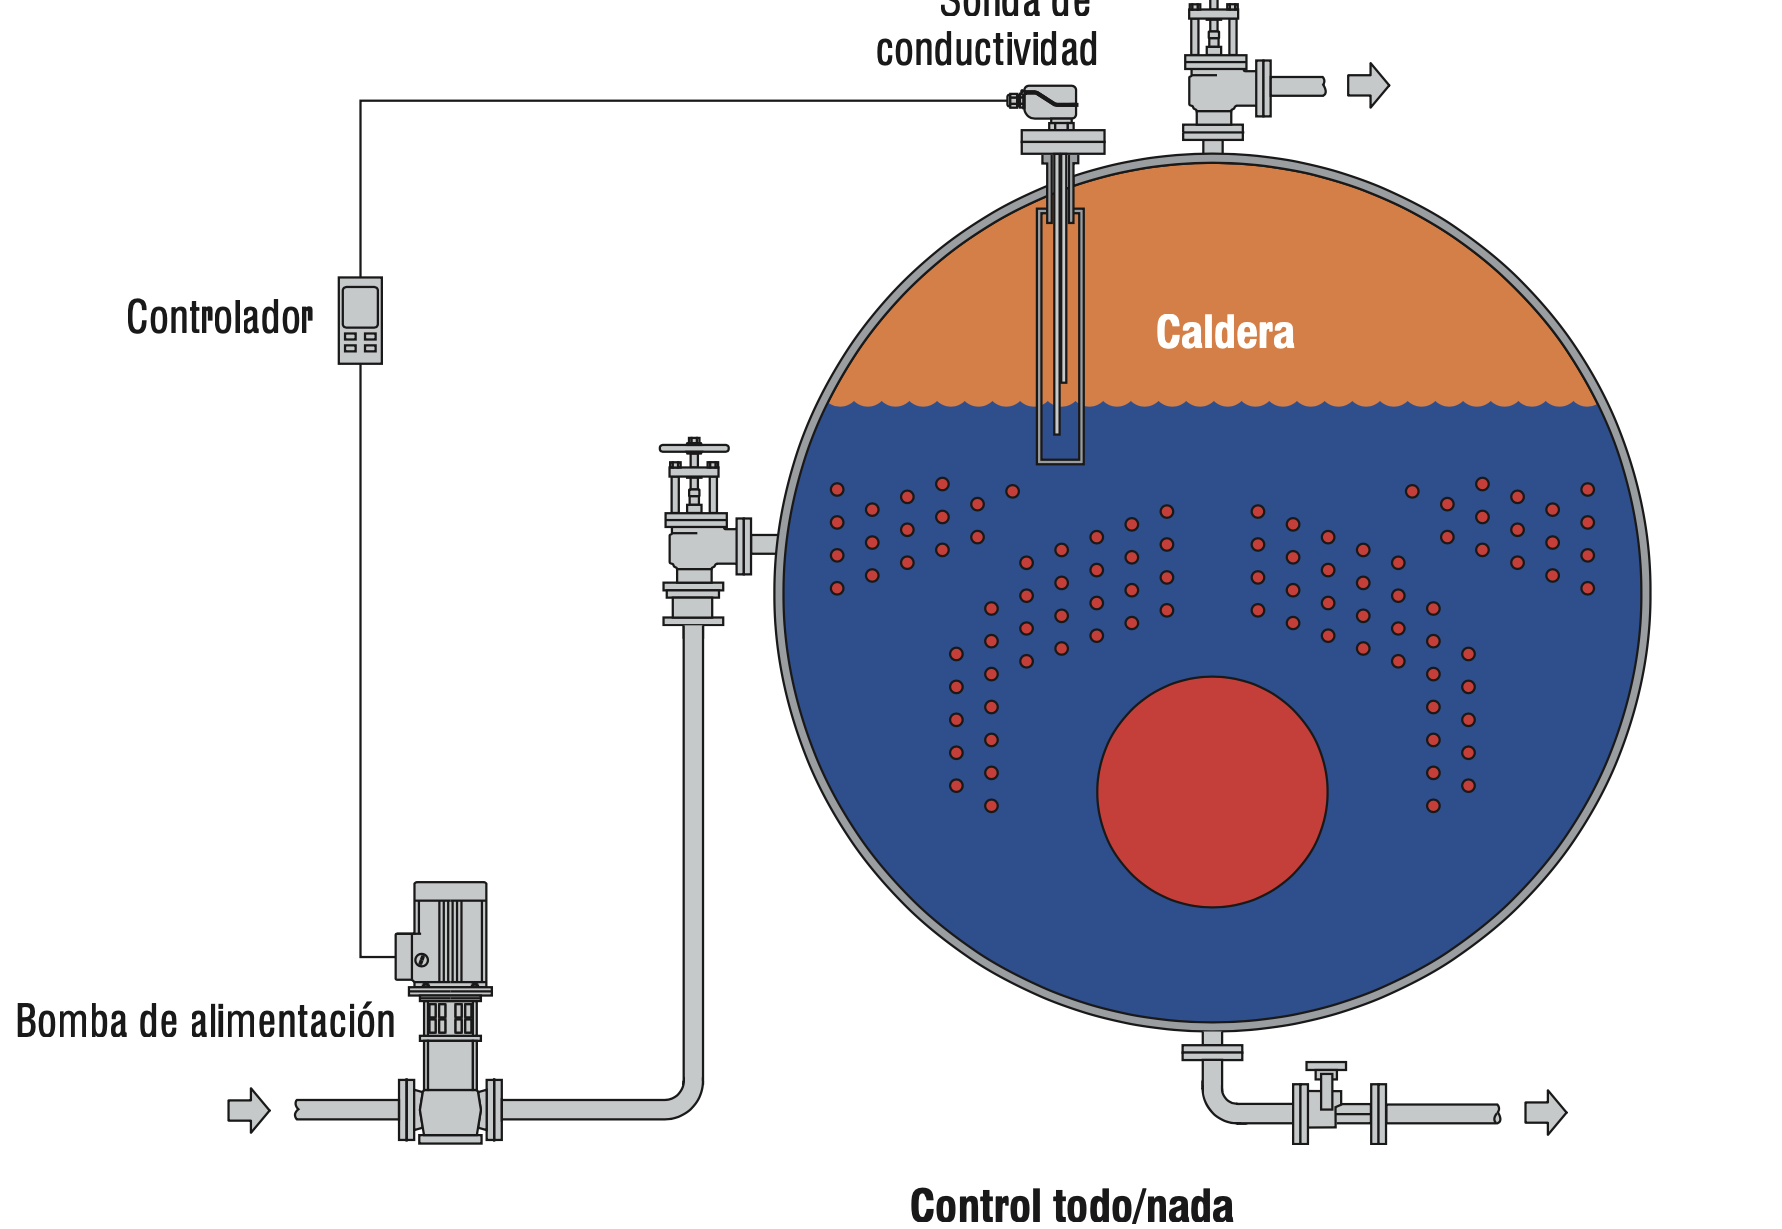 Optymalizacja wydajności: Automatyczna kontrola poziomu wody w kotłach